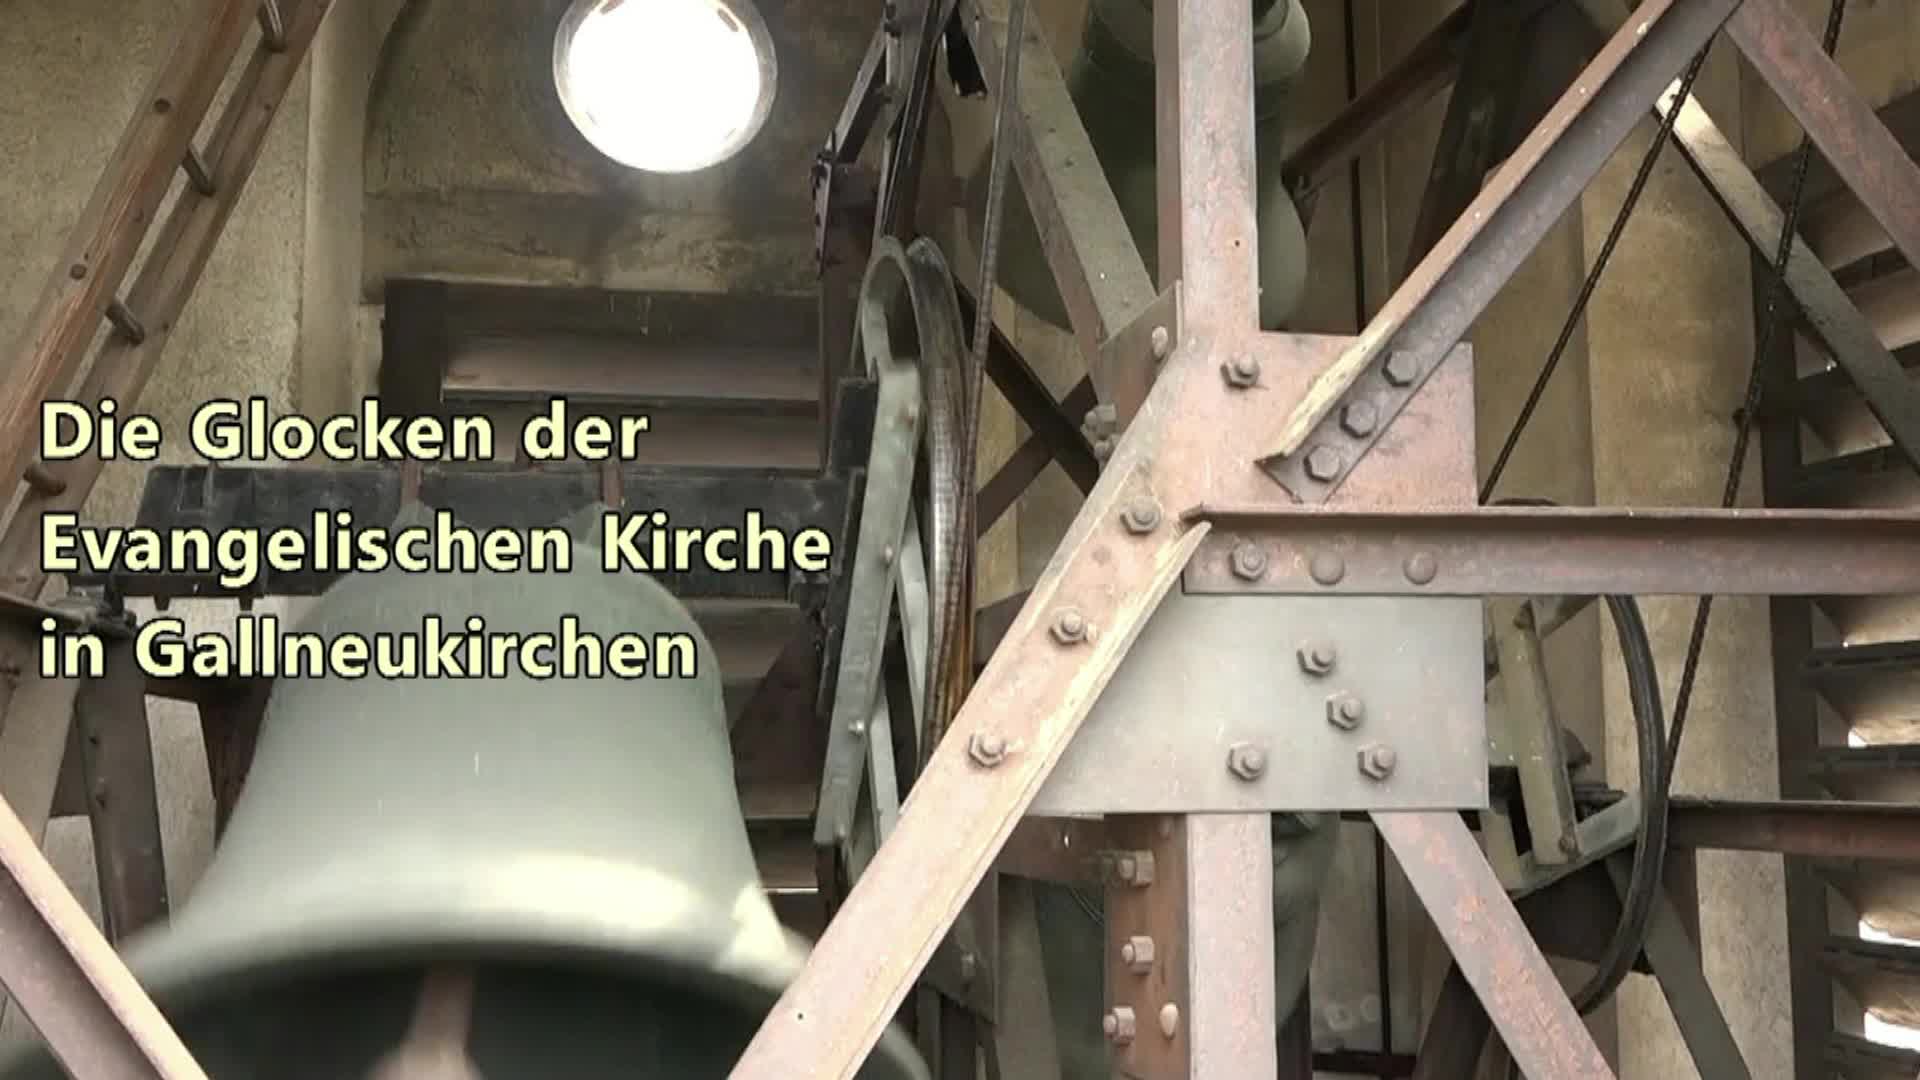 Die Glocken der Evangelischen Kirche in Gallneukirchen